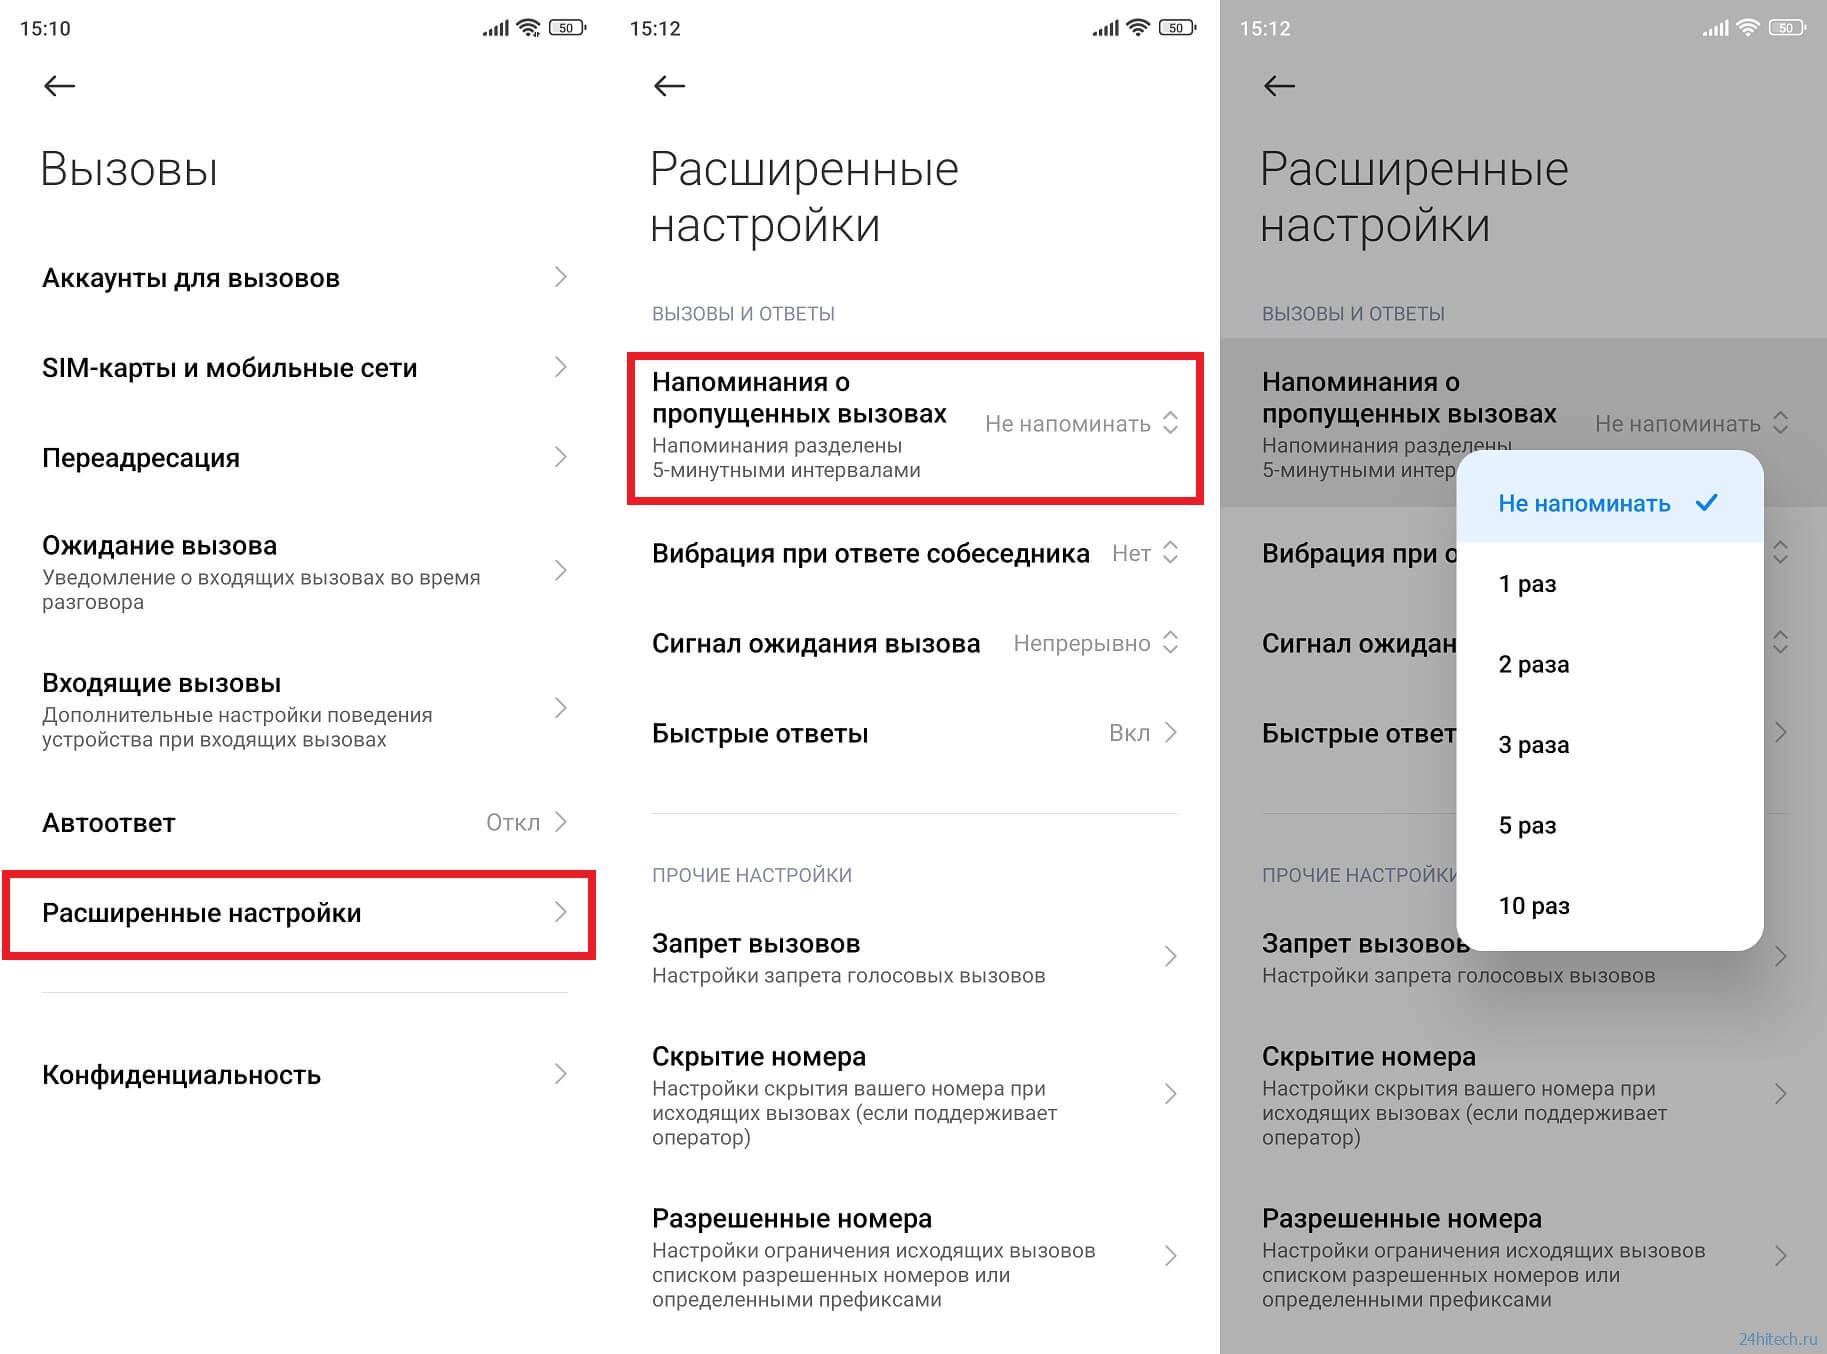 Как пользоваться телеграмм на телефоне пошаговая инструкция андроид на русском языке фото 90